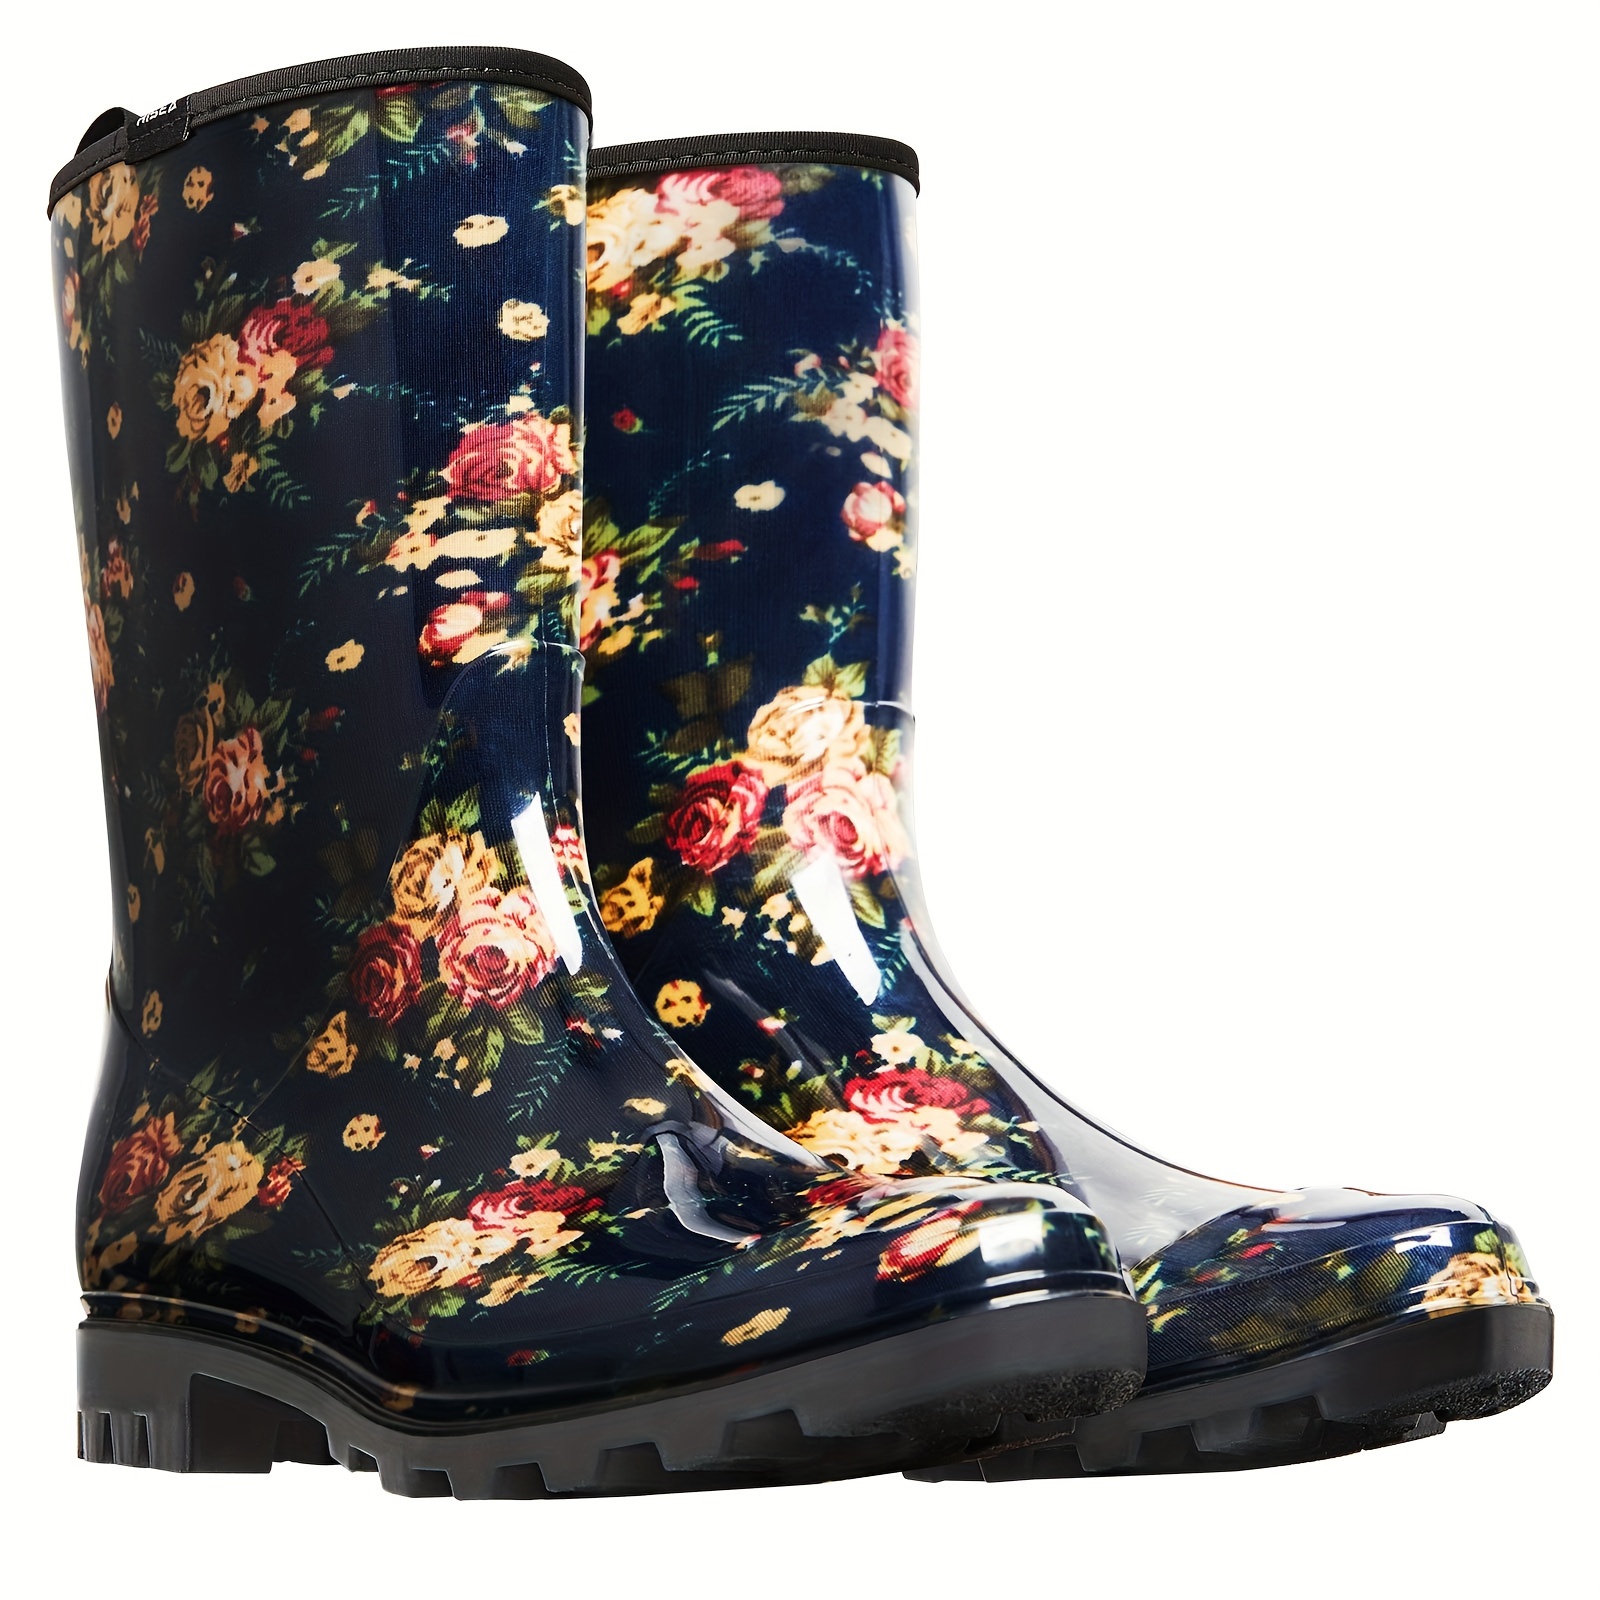 

Hisea Women's Rain Boots Waterproof Mid Calf Garden Boots For Women